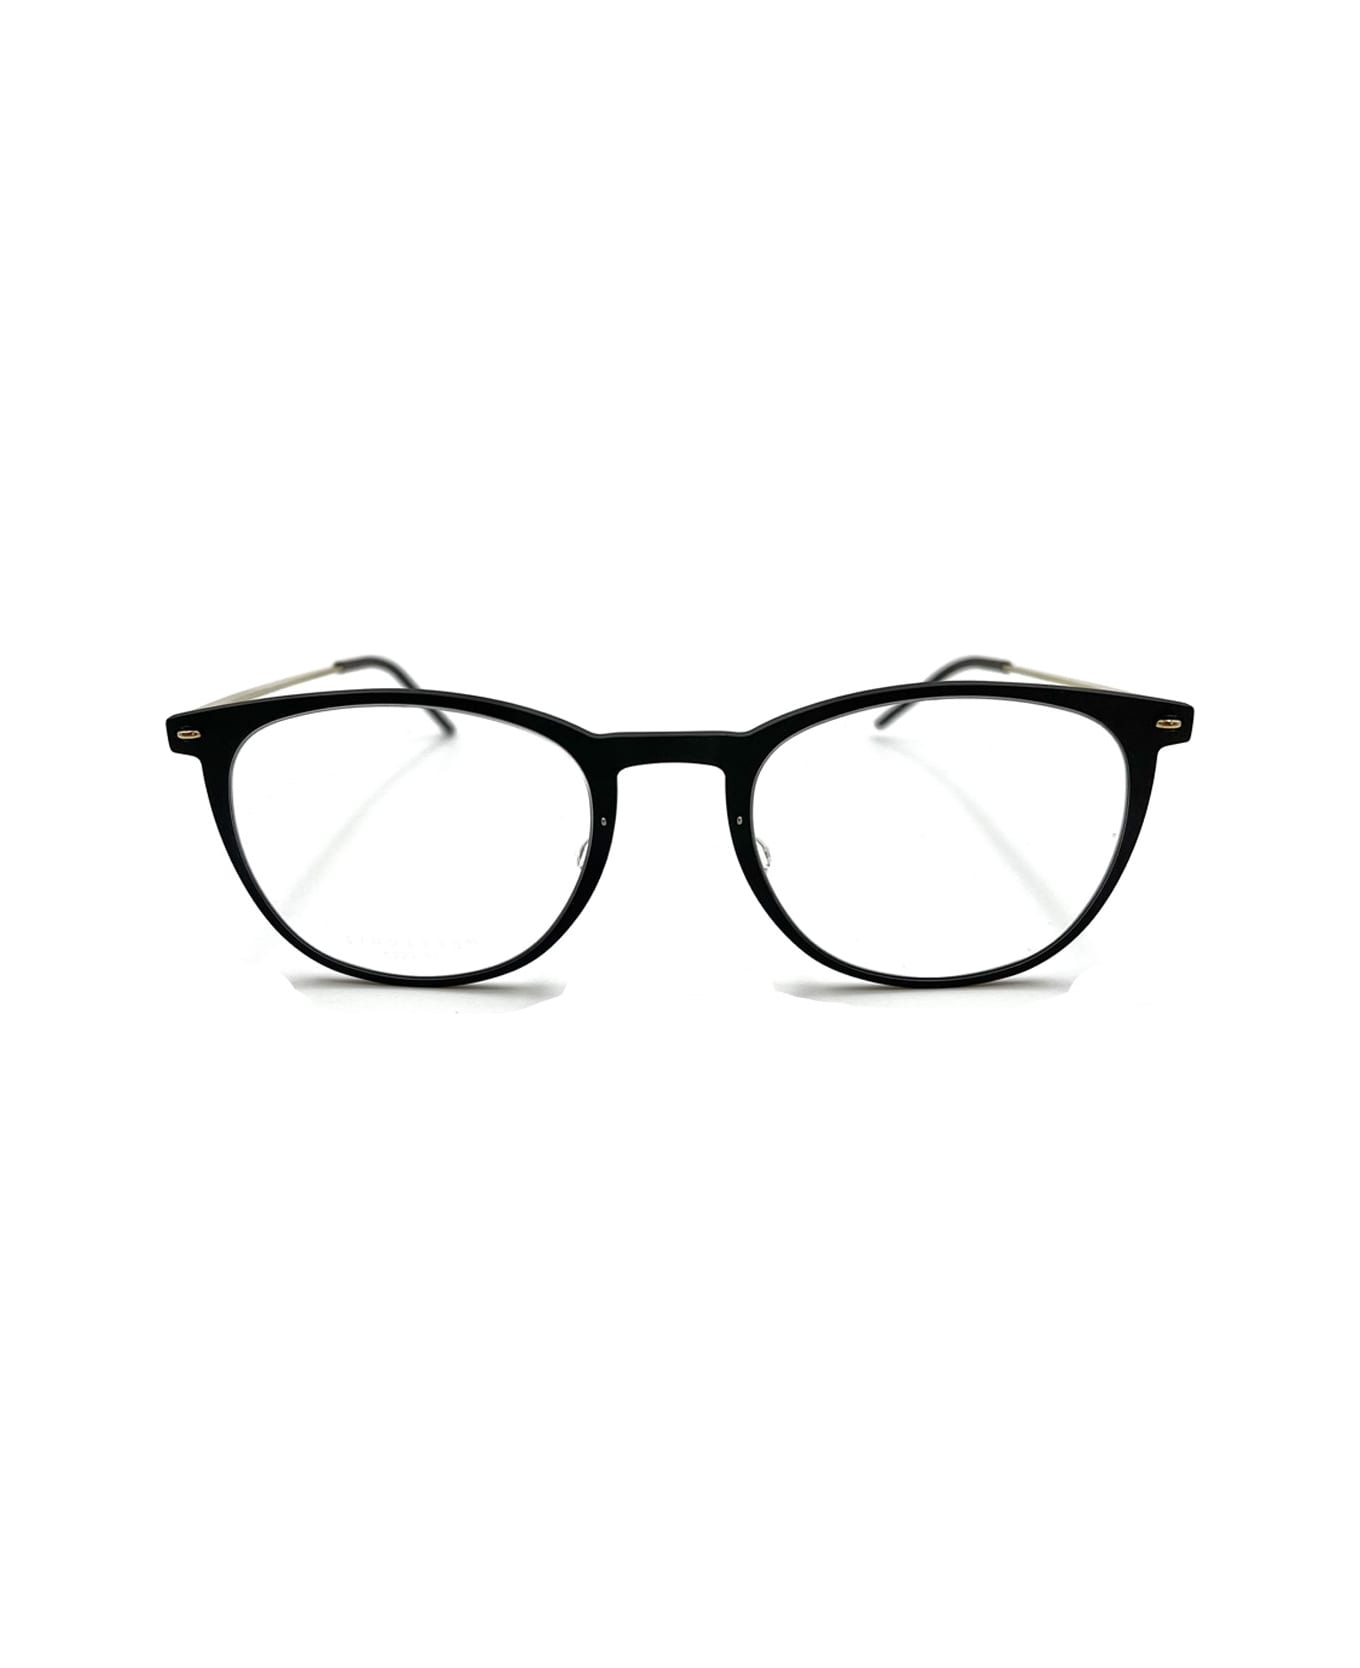 LINDBERG N.o.w. 6529 Glasses - Nero